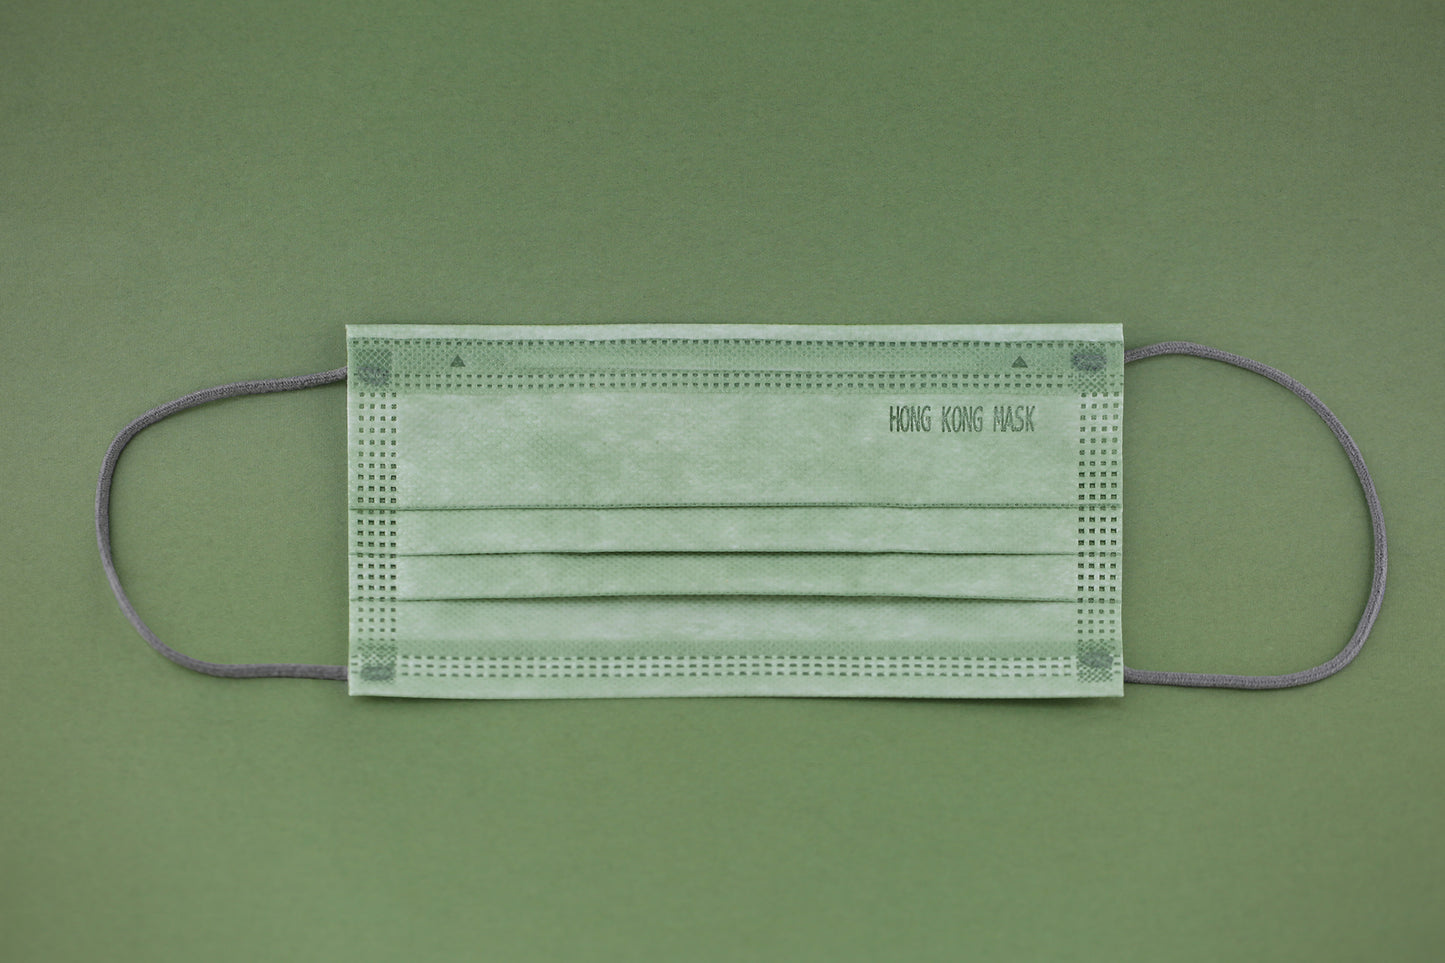 【夏日優惠】Matcha Green, EN14683 Type IIR | ASTM Level 3 (50 pcs)【 Made in HongKong 】